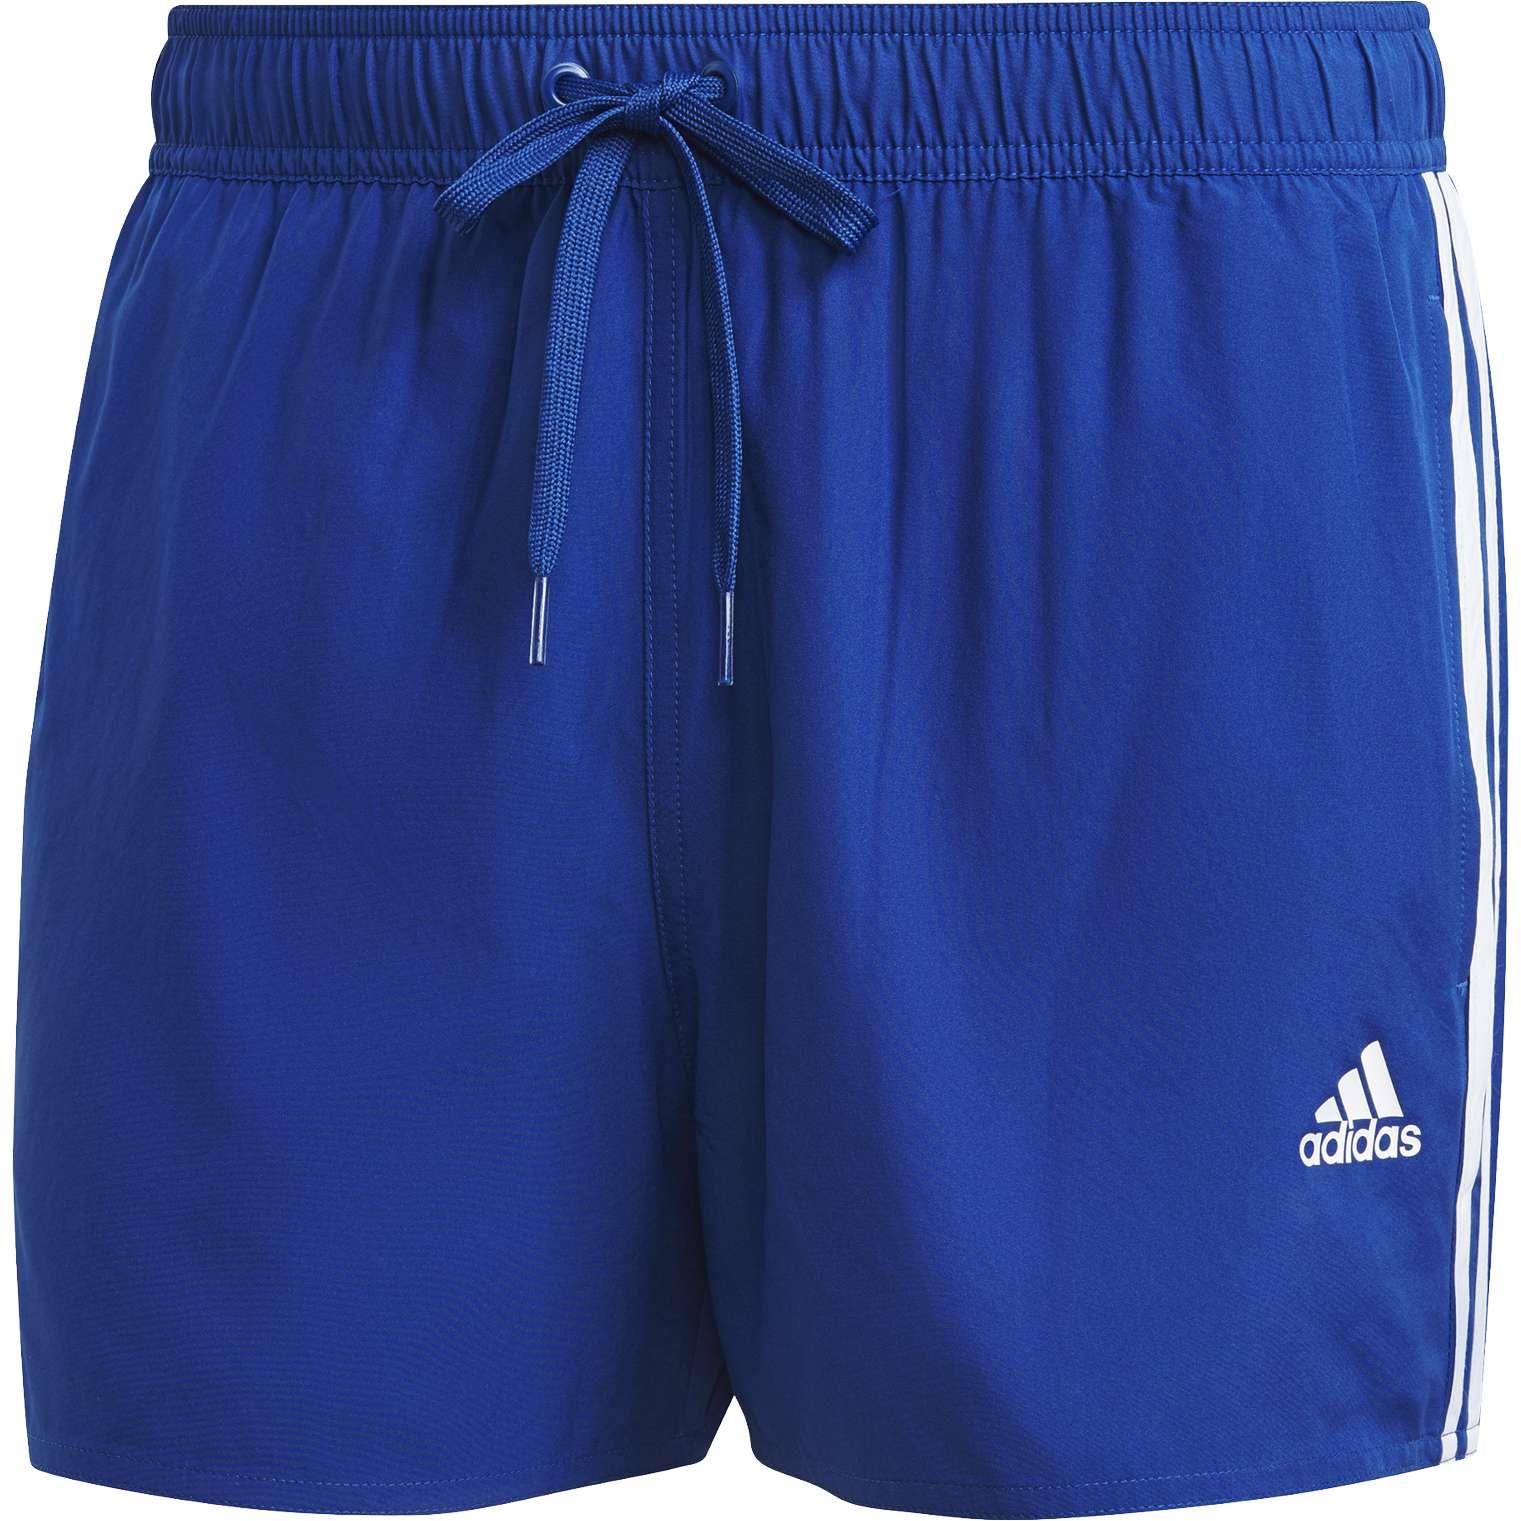 Verwachting Artiest versieren Adidas Classic 3-Stripes zwembroek heren royal blue